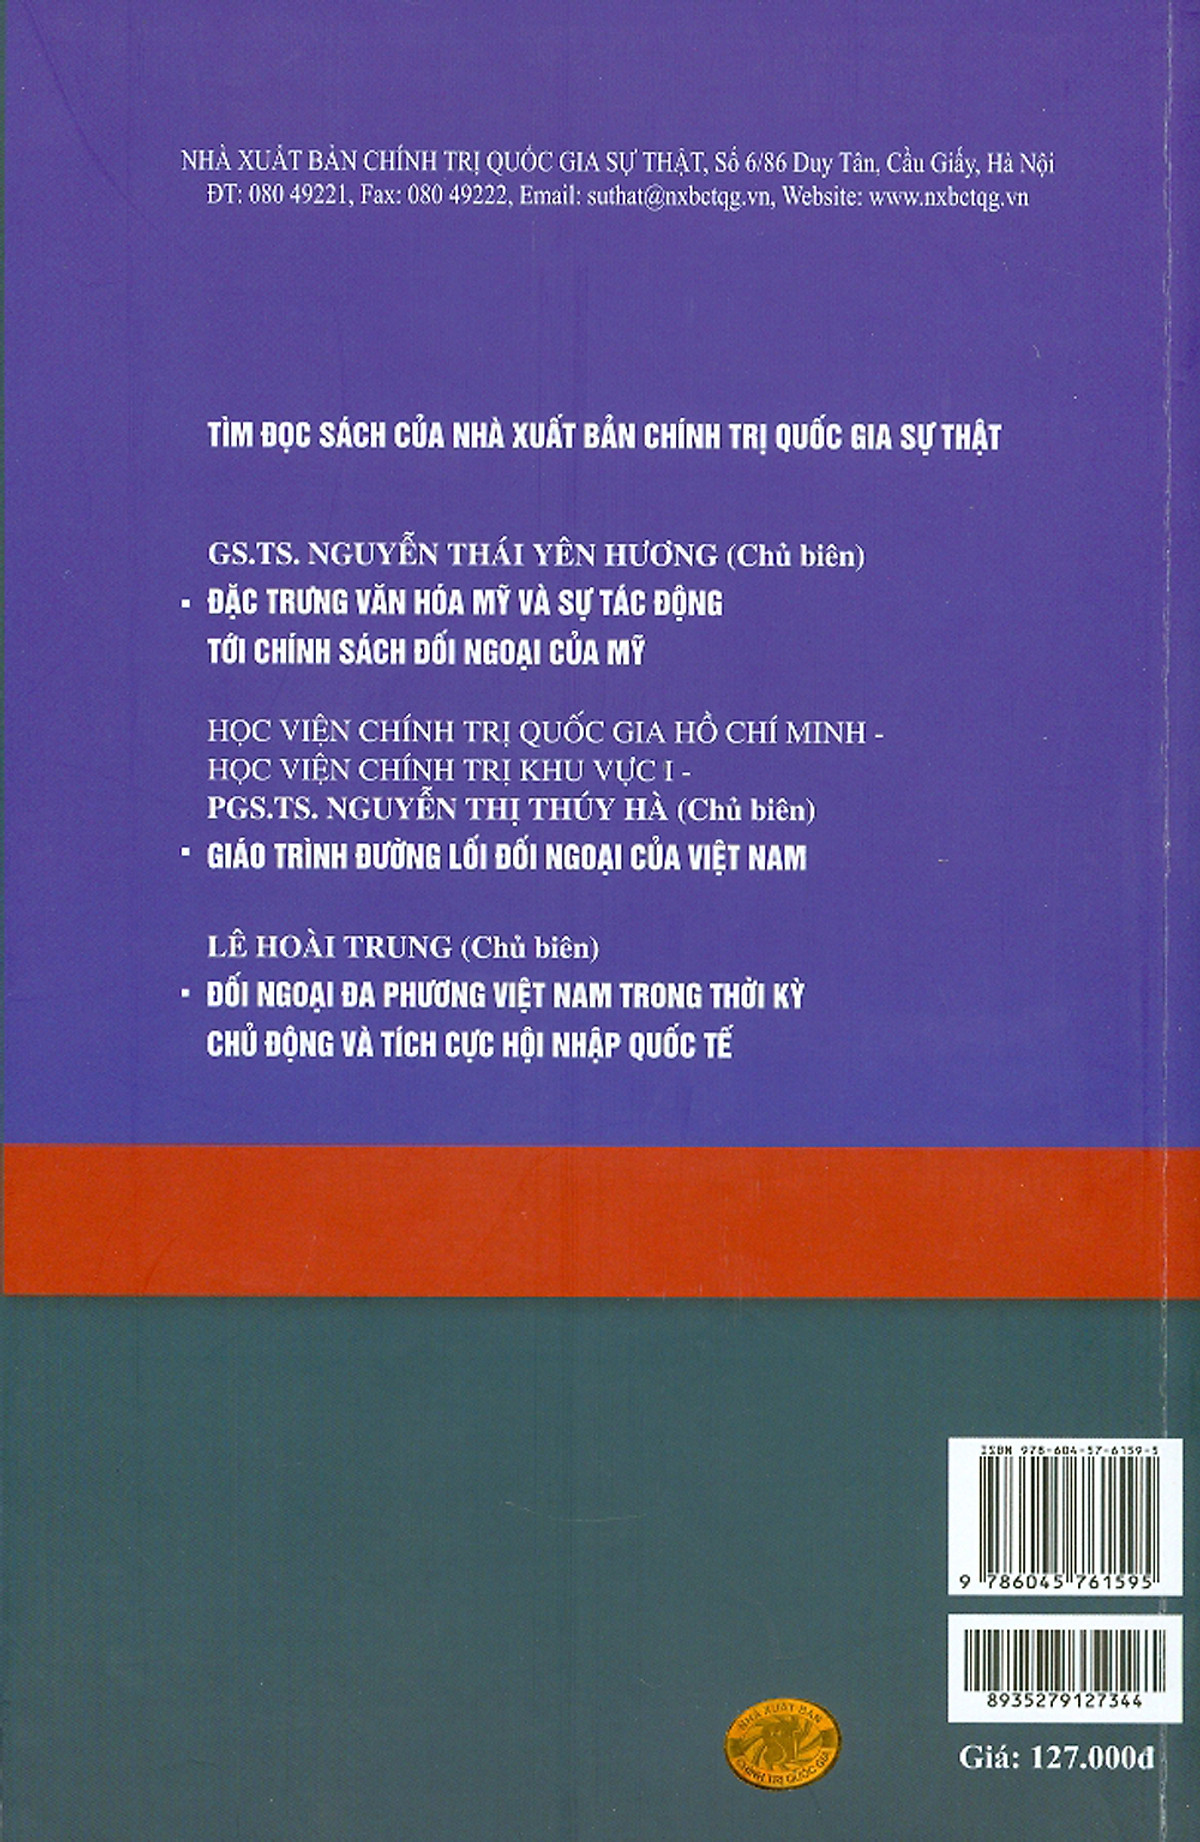 Nước Mỹ Nổi Giận - Cuộc Chia Rẽ Chính Trị Sâu Sắc - Alison Dagnes - Trọng Minh, Anh Đức dịch - (bìa mềm)